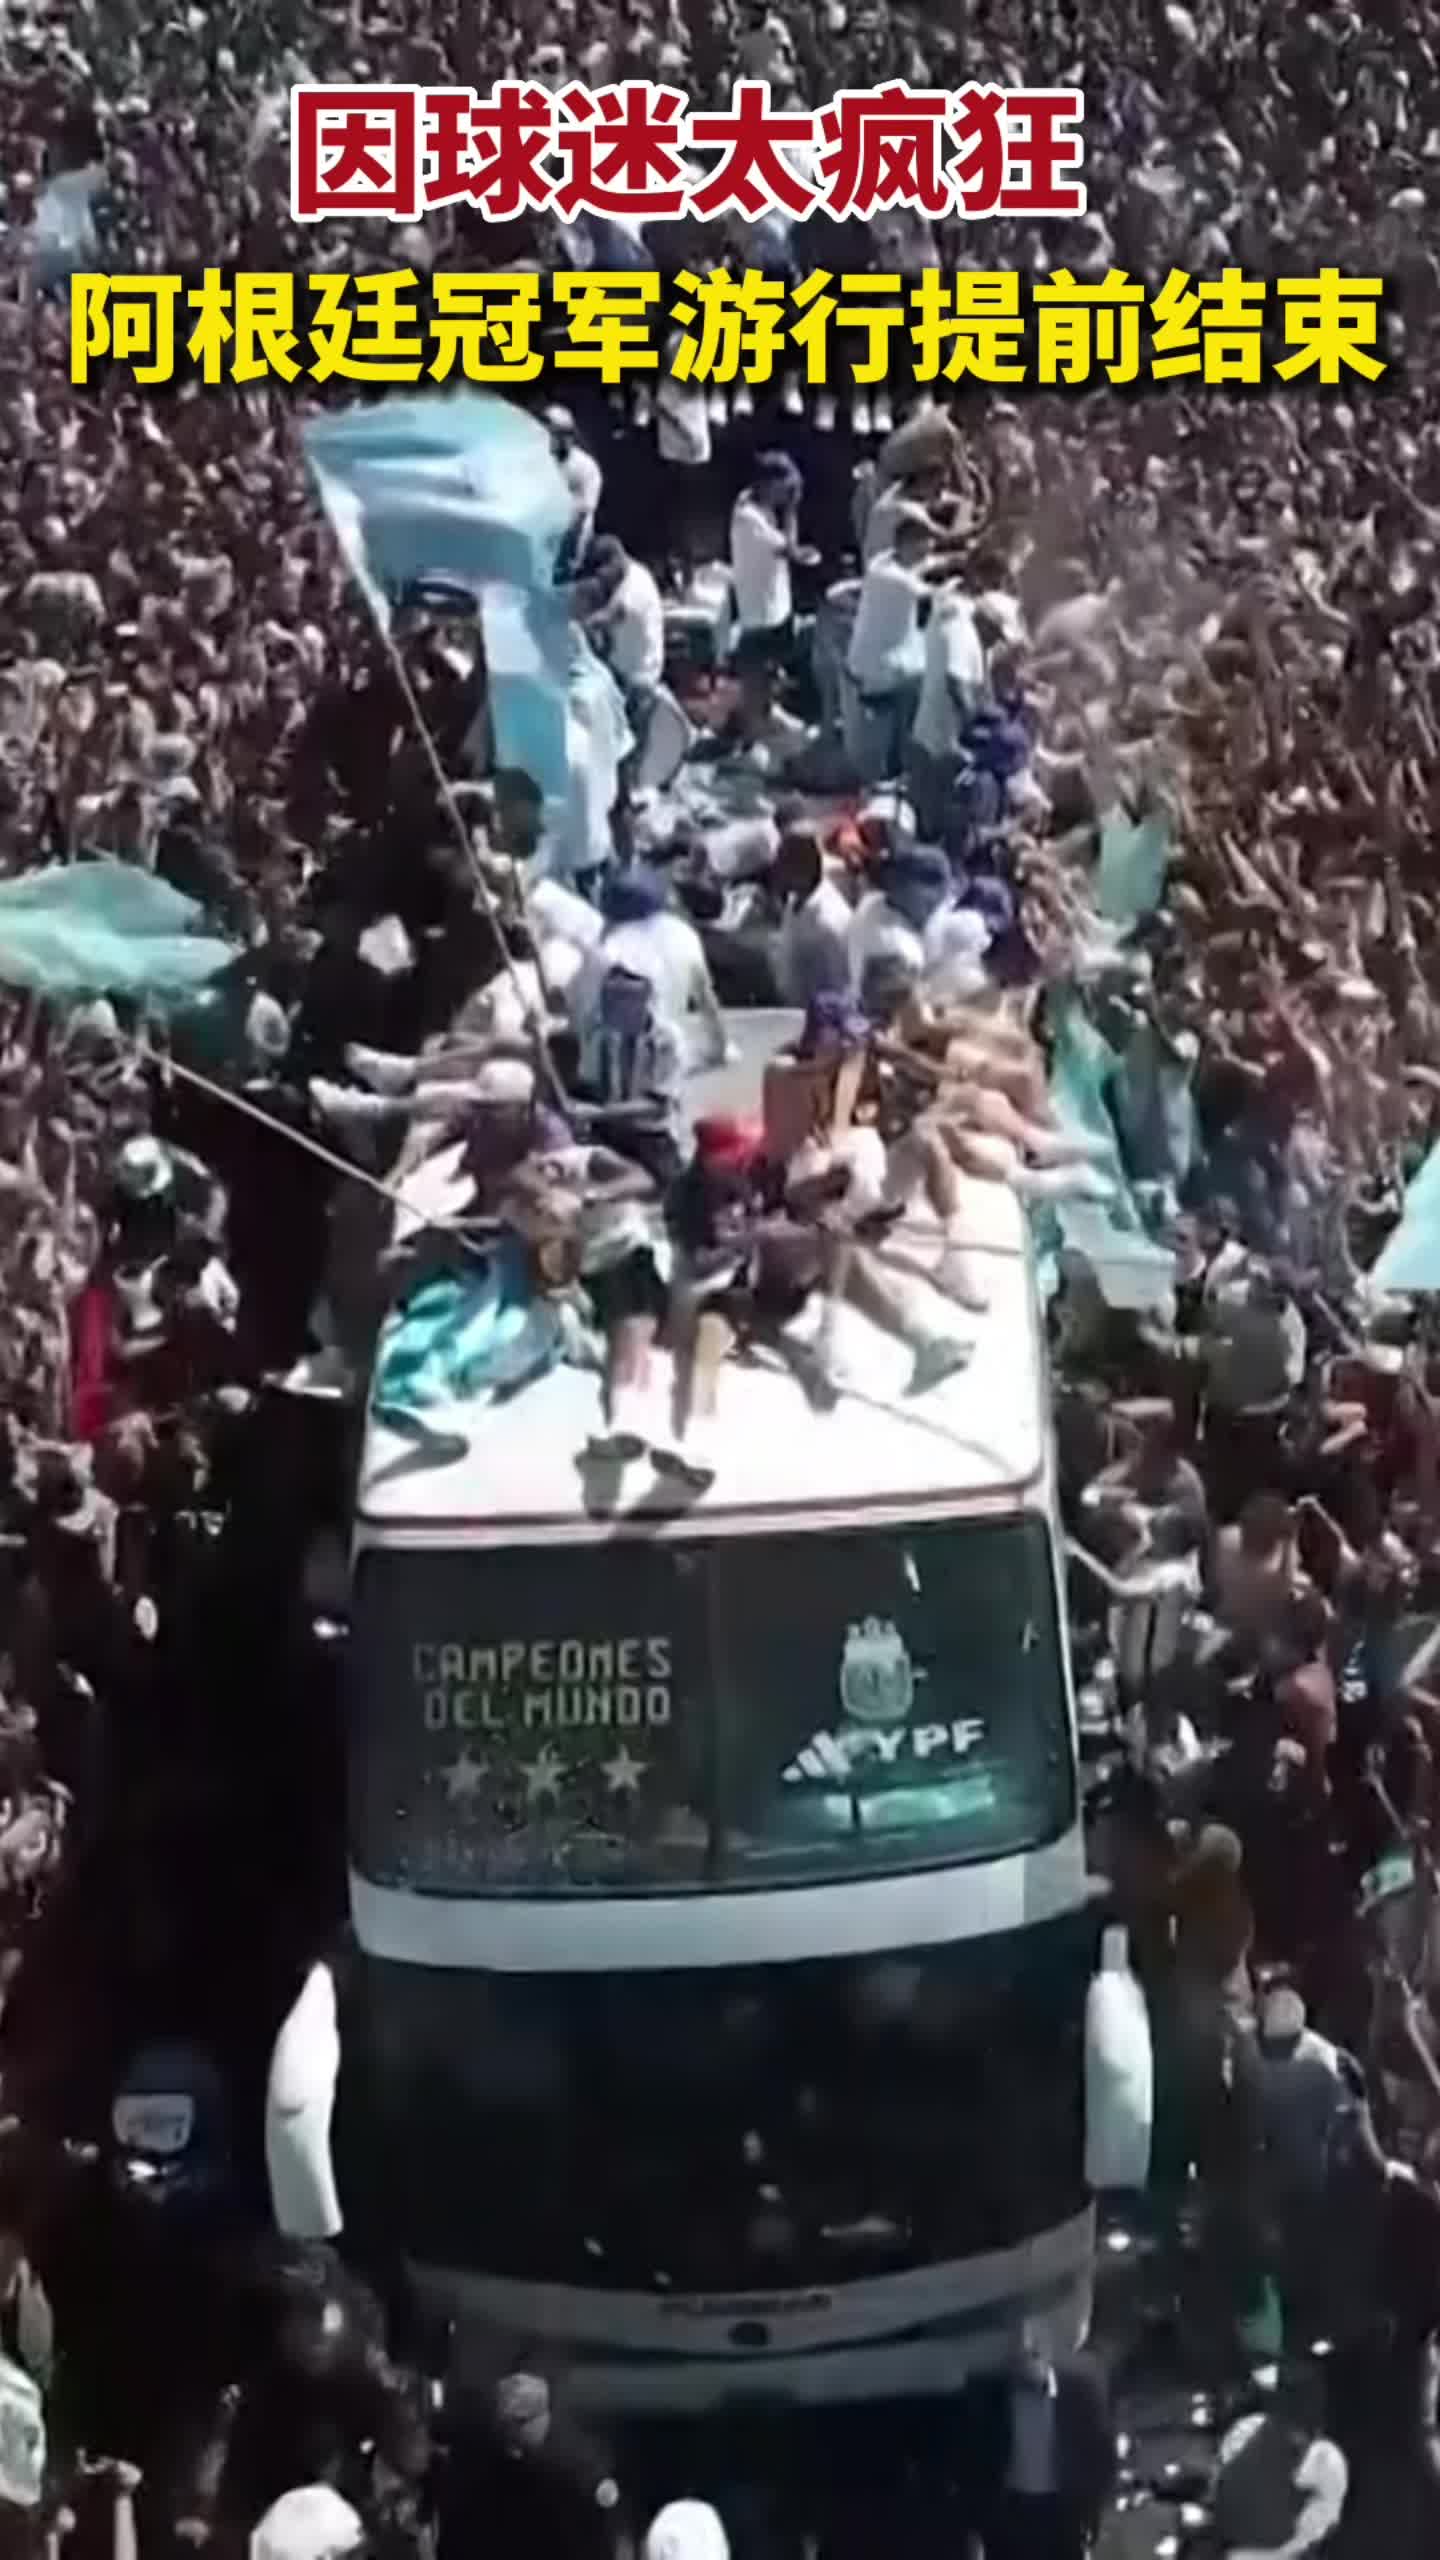 阿根廷400万人齐庆祝 为安全起见夺冠巡游提早结束